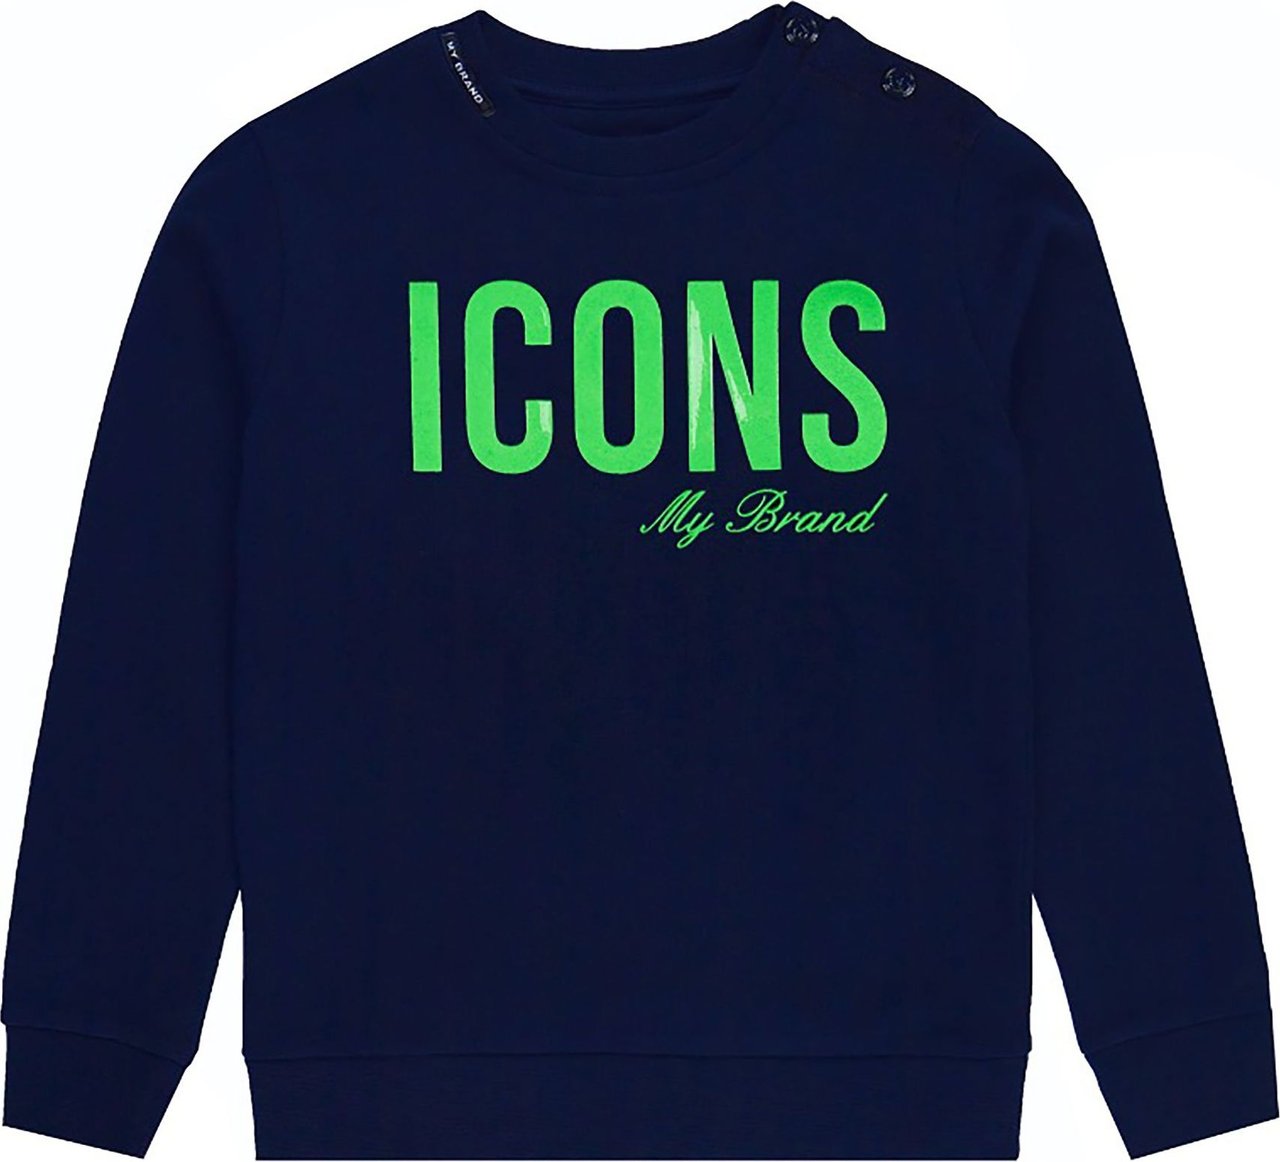 My Brand Icons Neon Sweater Navy Blauw